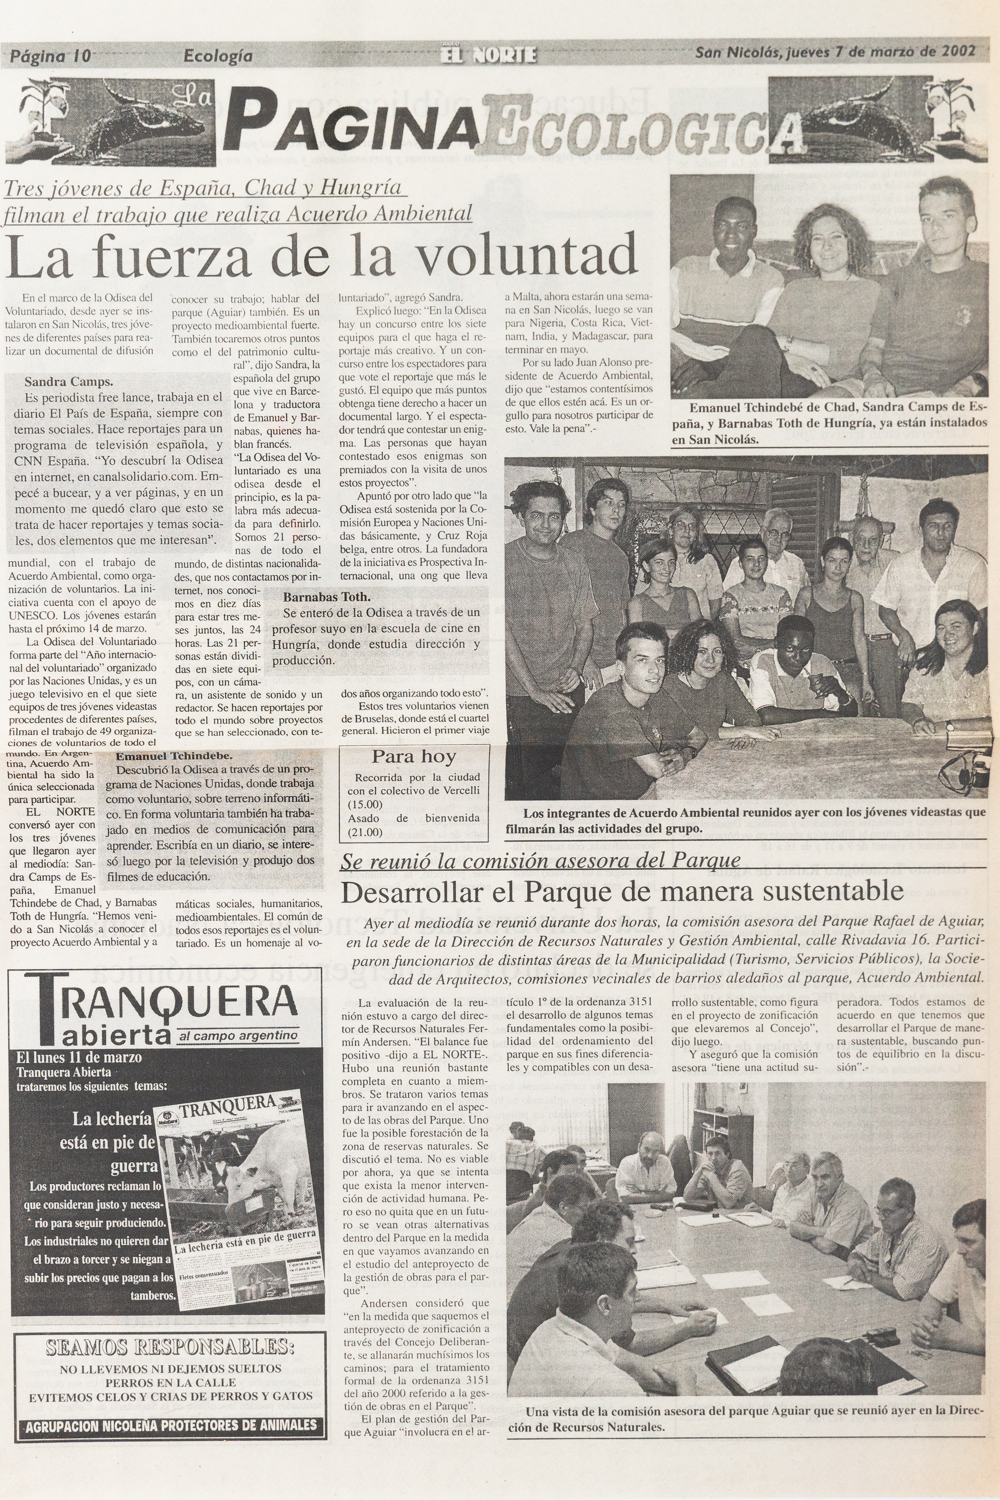 La Fuerza de Voluntad. Diario El Norte. Marzo 2002. -1